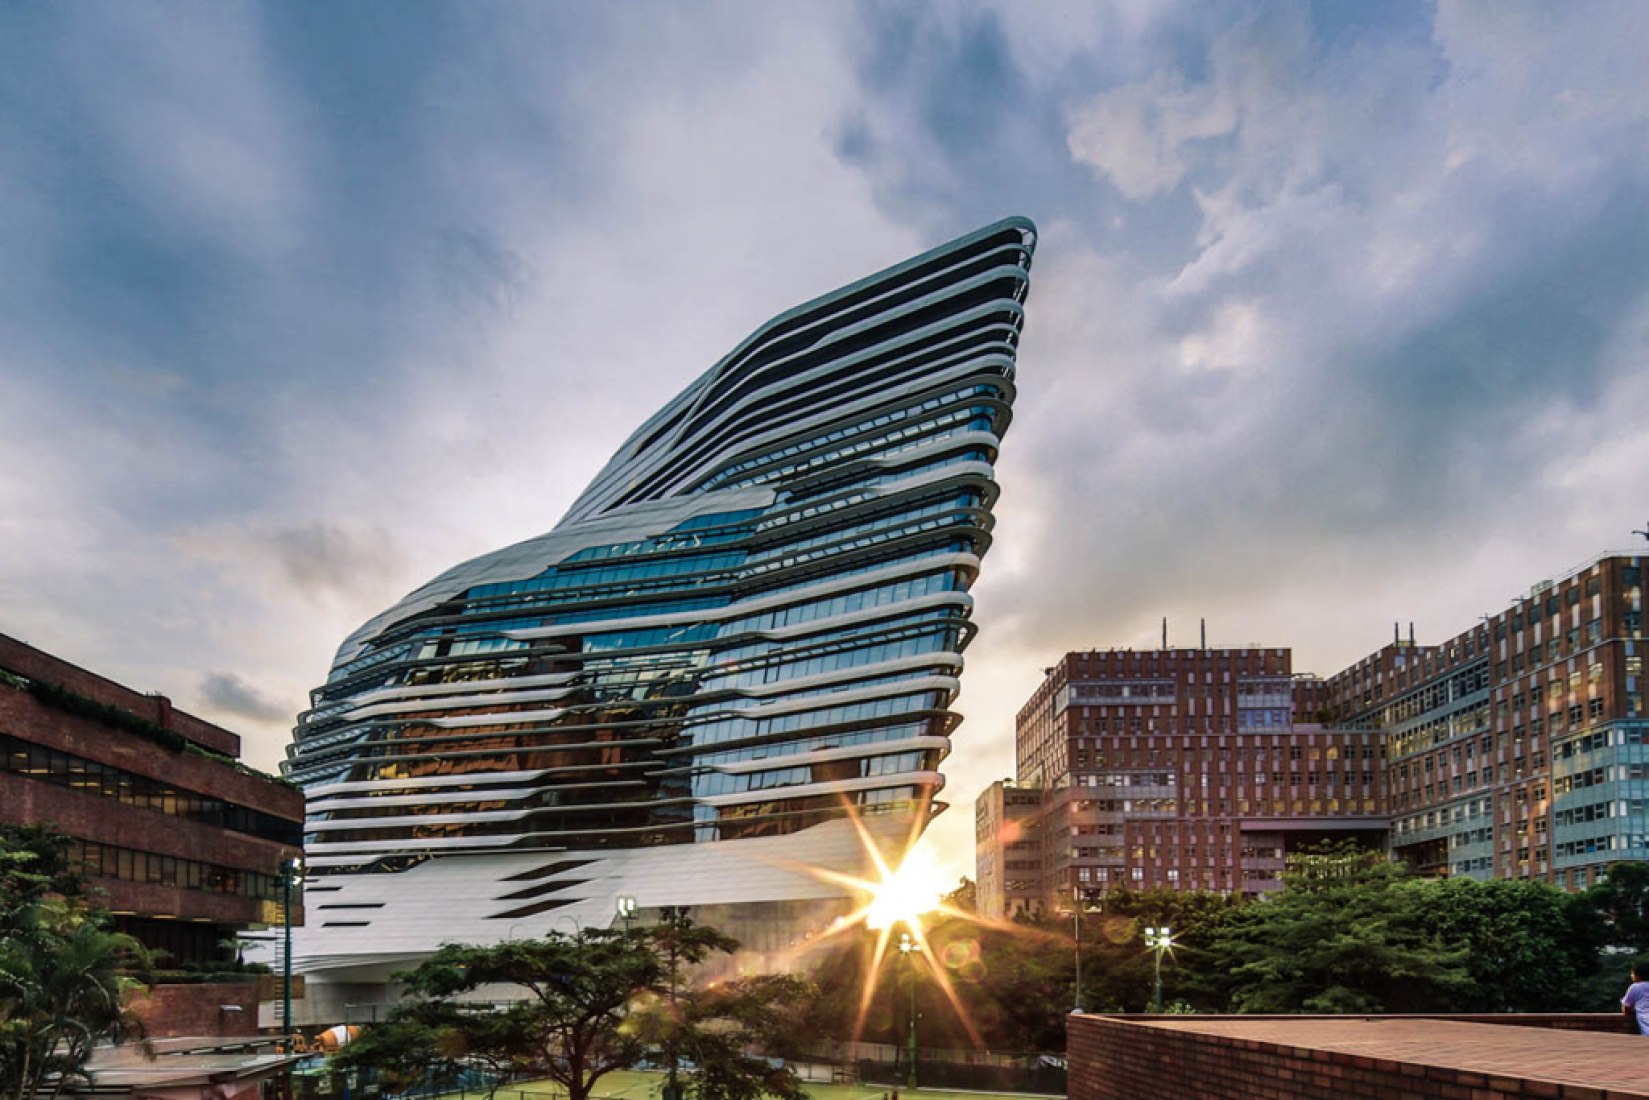 Vista exterior, Innovation Tower en la Hong Kong Polytechnic University. Fotografía © Edmon Leong.